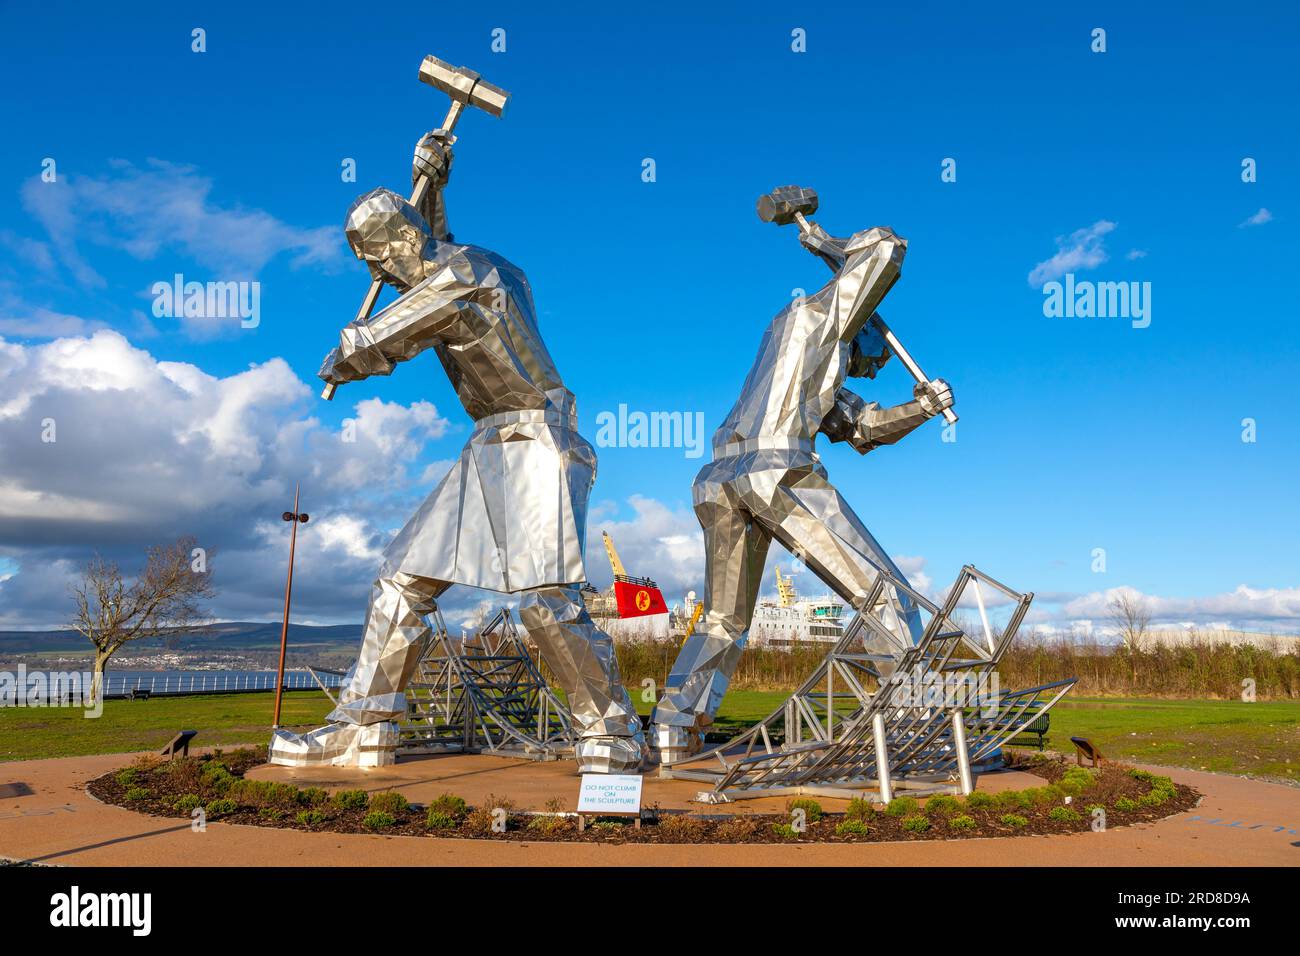 The Shipbuilders of Port Glasgow statues, Inverclyde, Coronation Park, Port Glasgow, Écosse, Royaume-Uni, Europe Banque D'Images